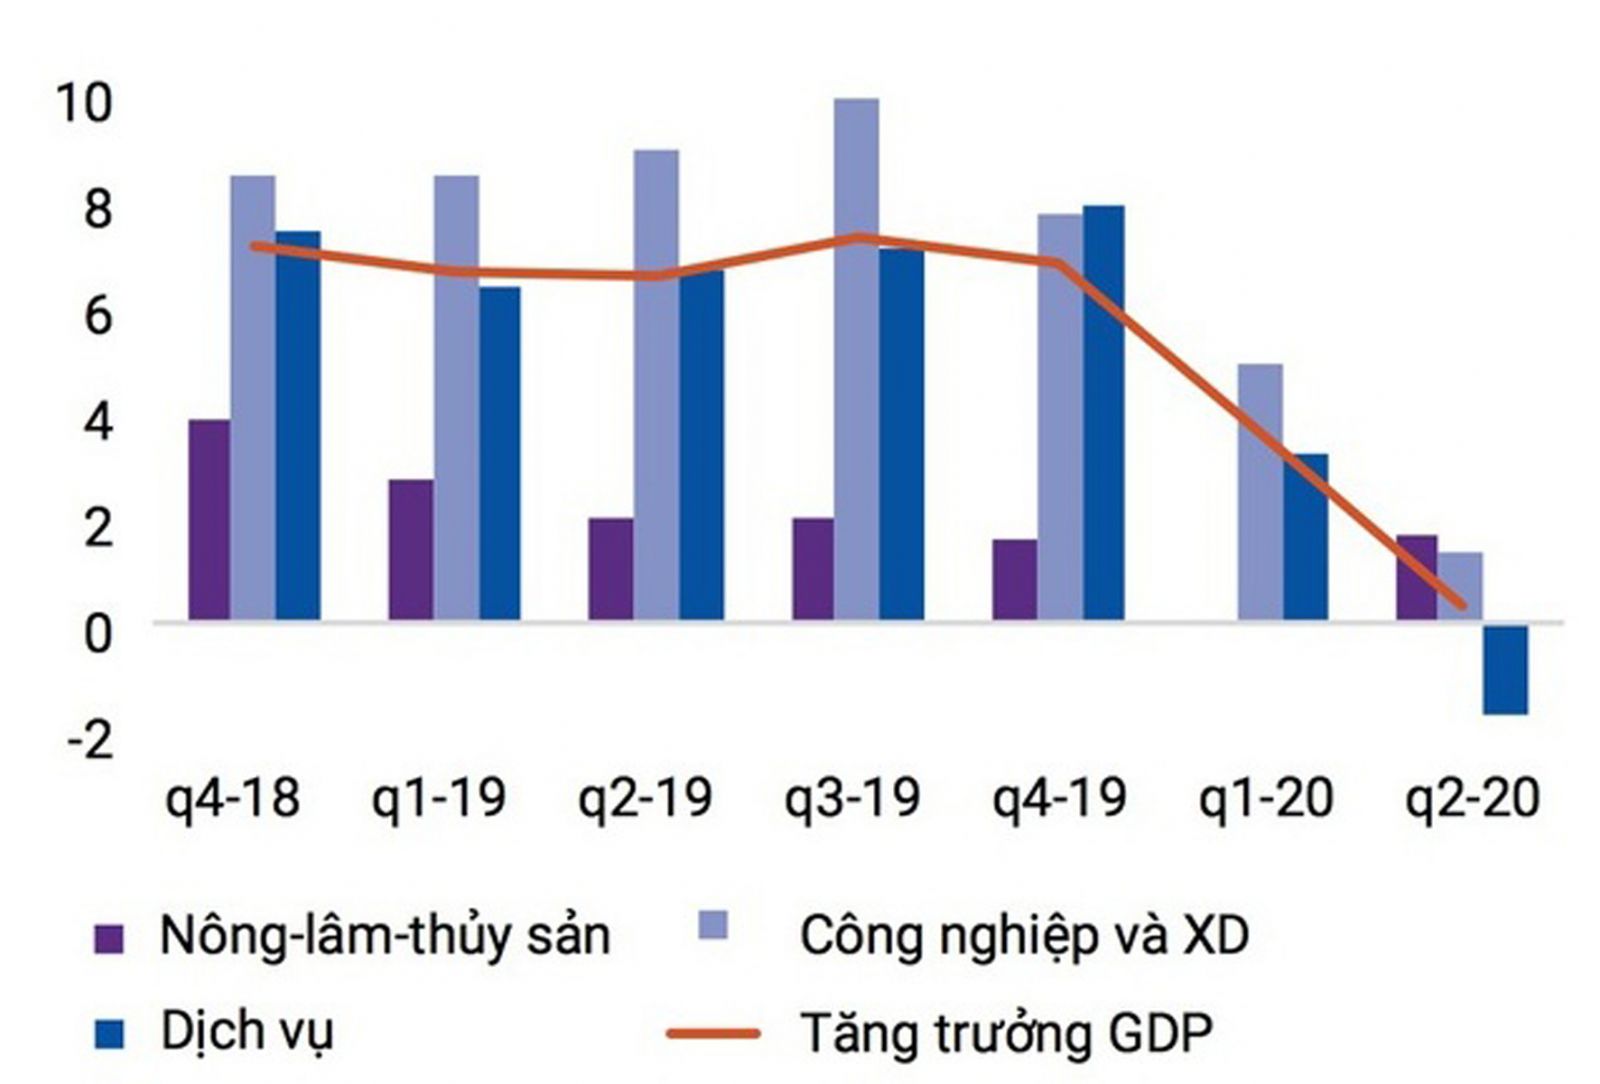  Tăng trưởng GDP của Việt Nam theo quý. ĐVT: %